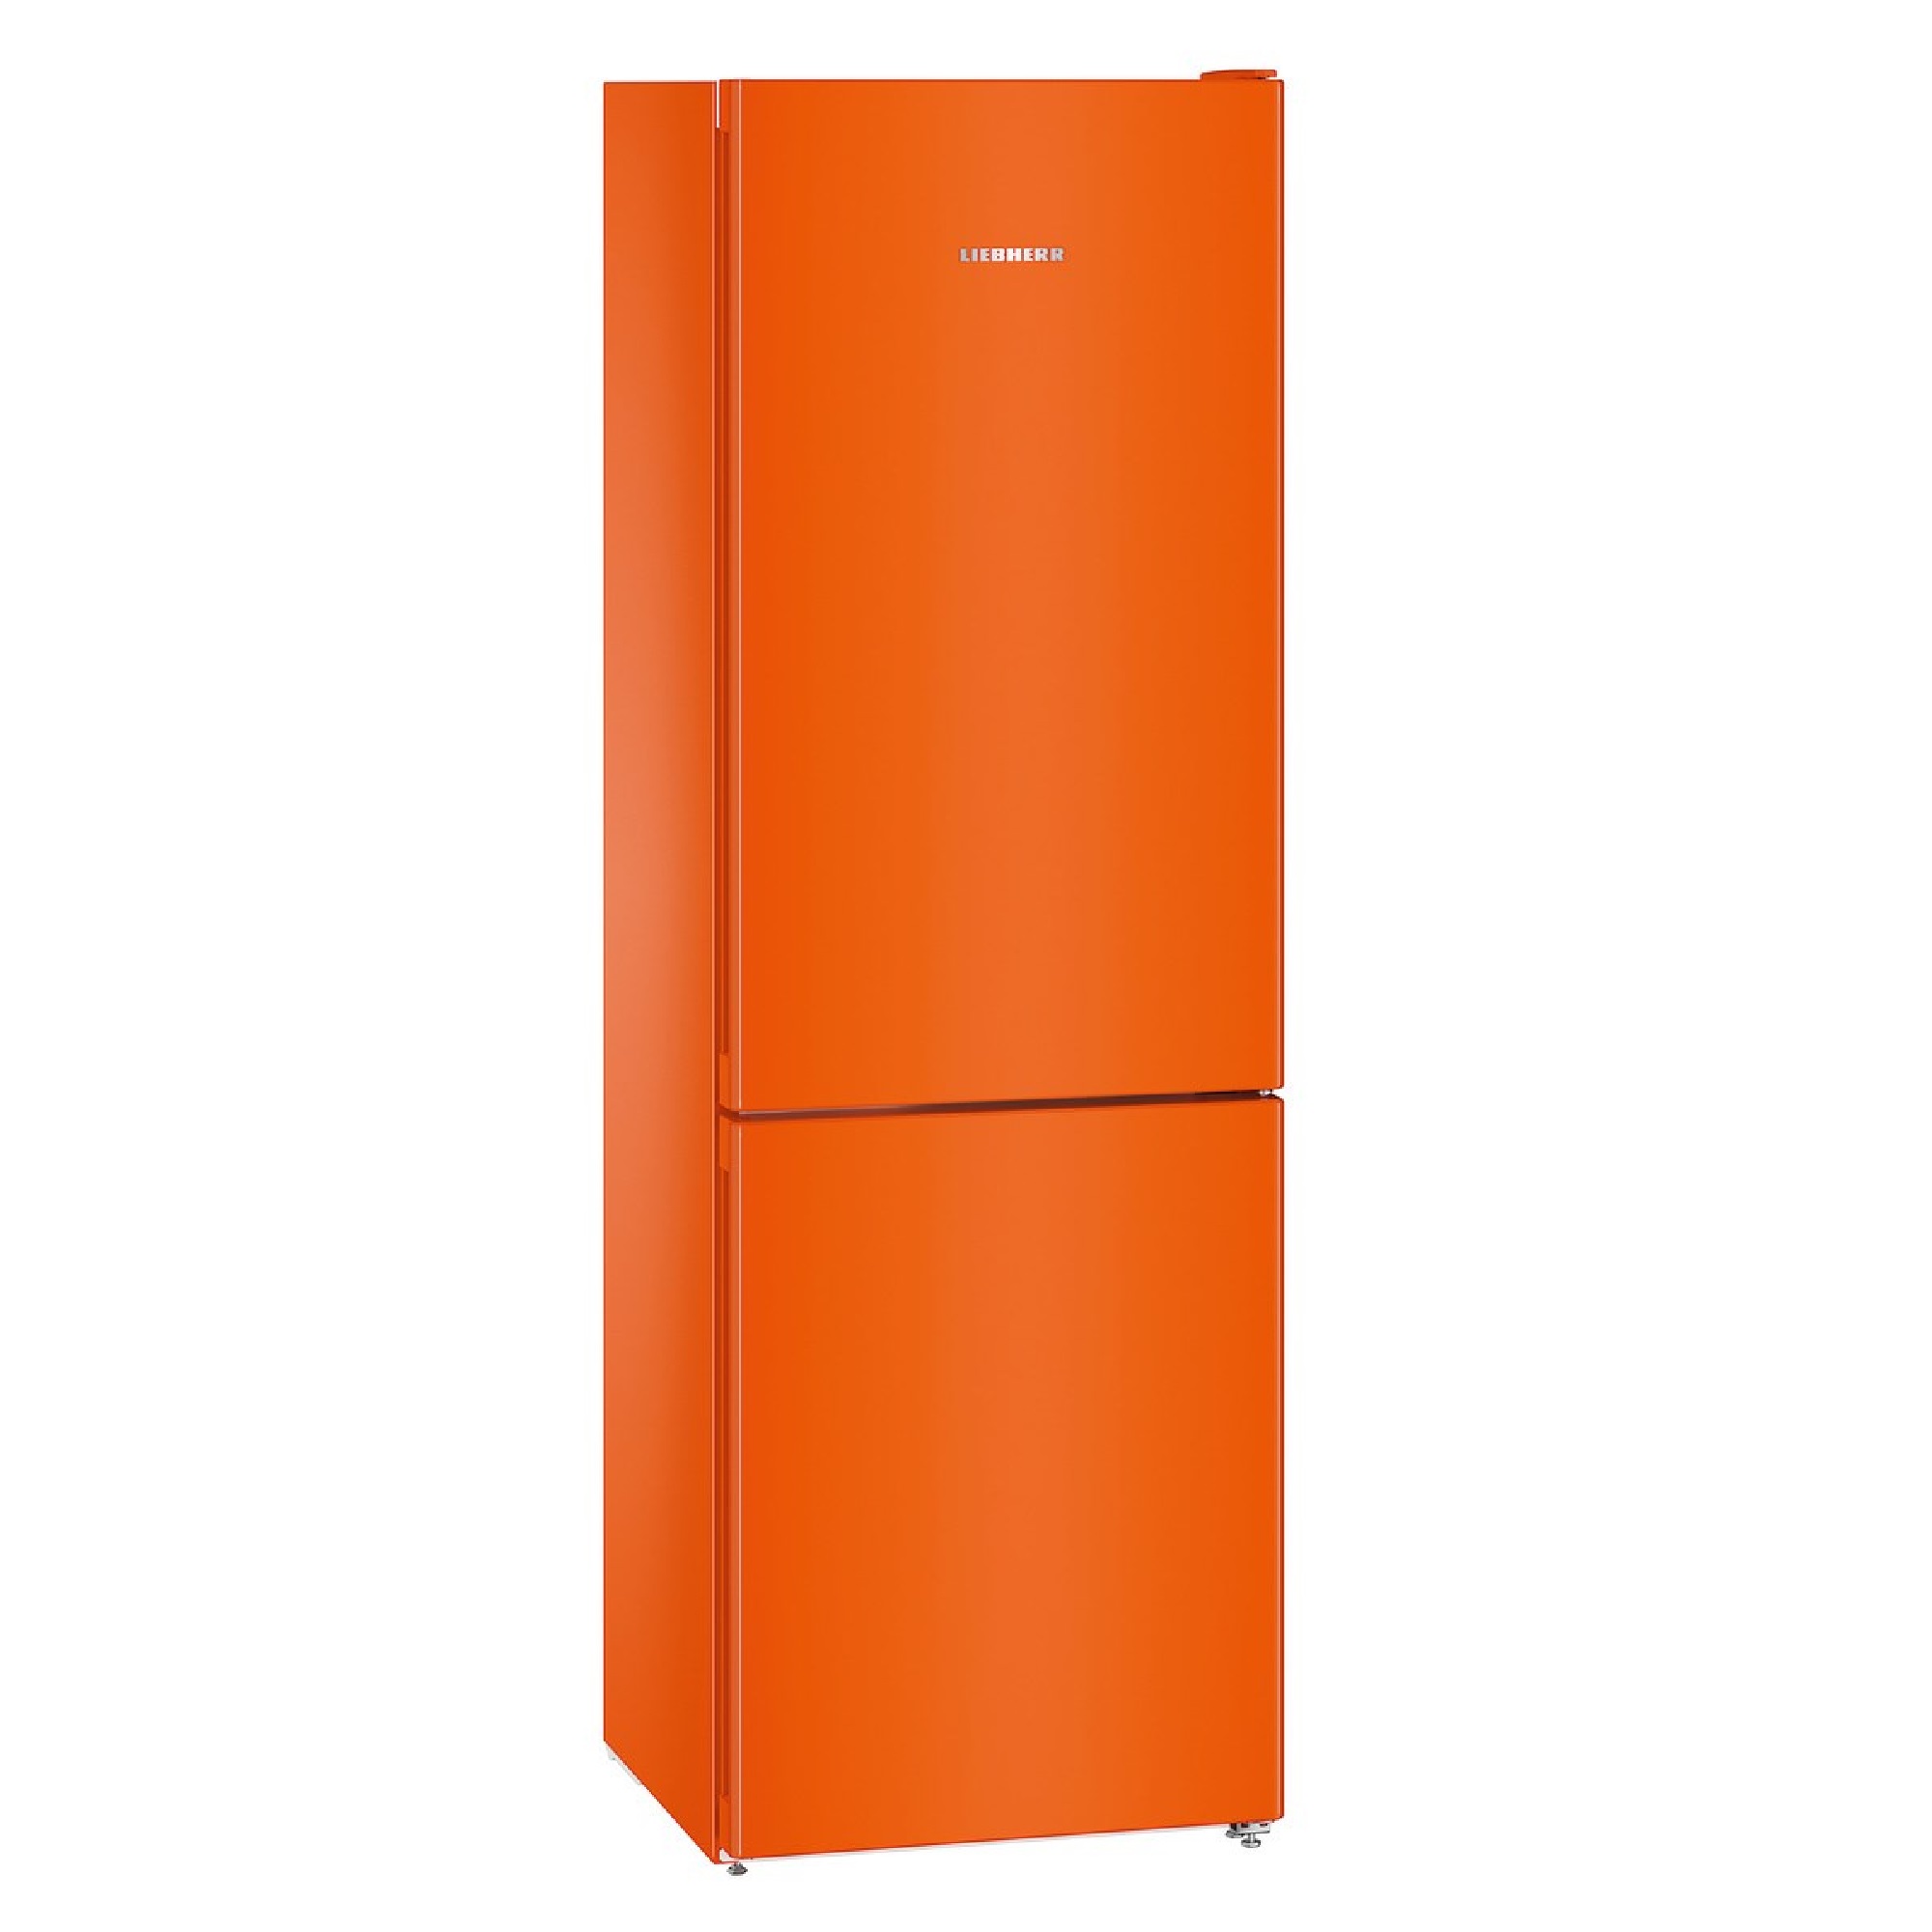 Купить холодильник в ярославле недорого. Холодильник Liebherr CNNO 4313. Холодильник Либхер 4313 оранжевый. Холодильник Liebherr CNNO 4313 оранжевый. Liebherr CNNO 4313 оранжевый.